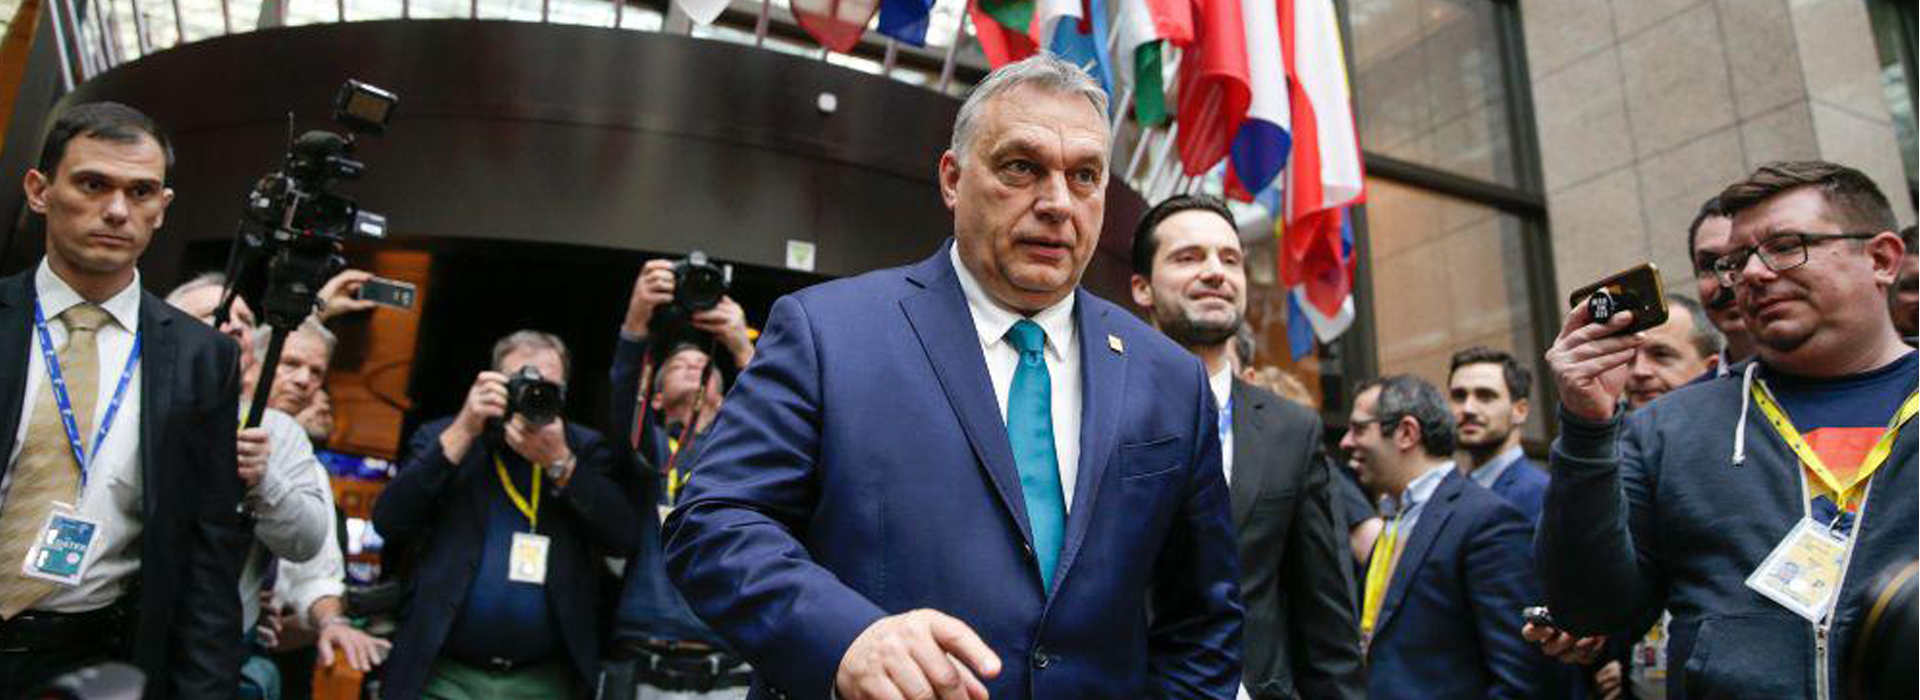 Угорщина стала останньою державою ЄС, яка розглядає питання національного регулювання соціальних мереж